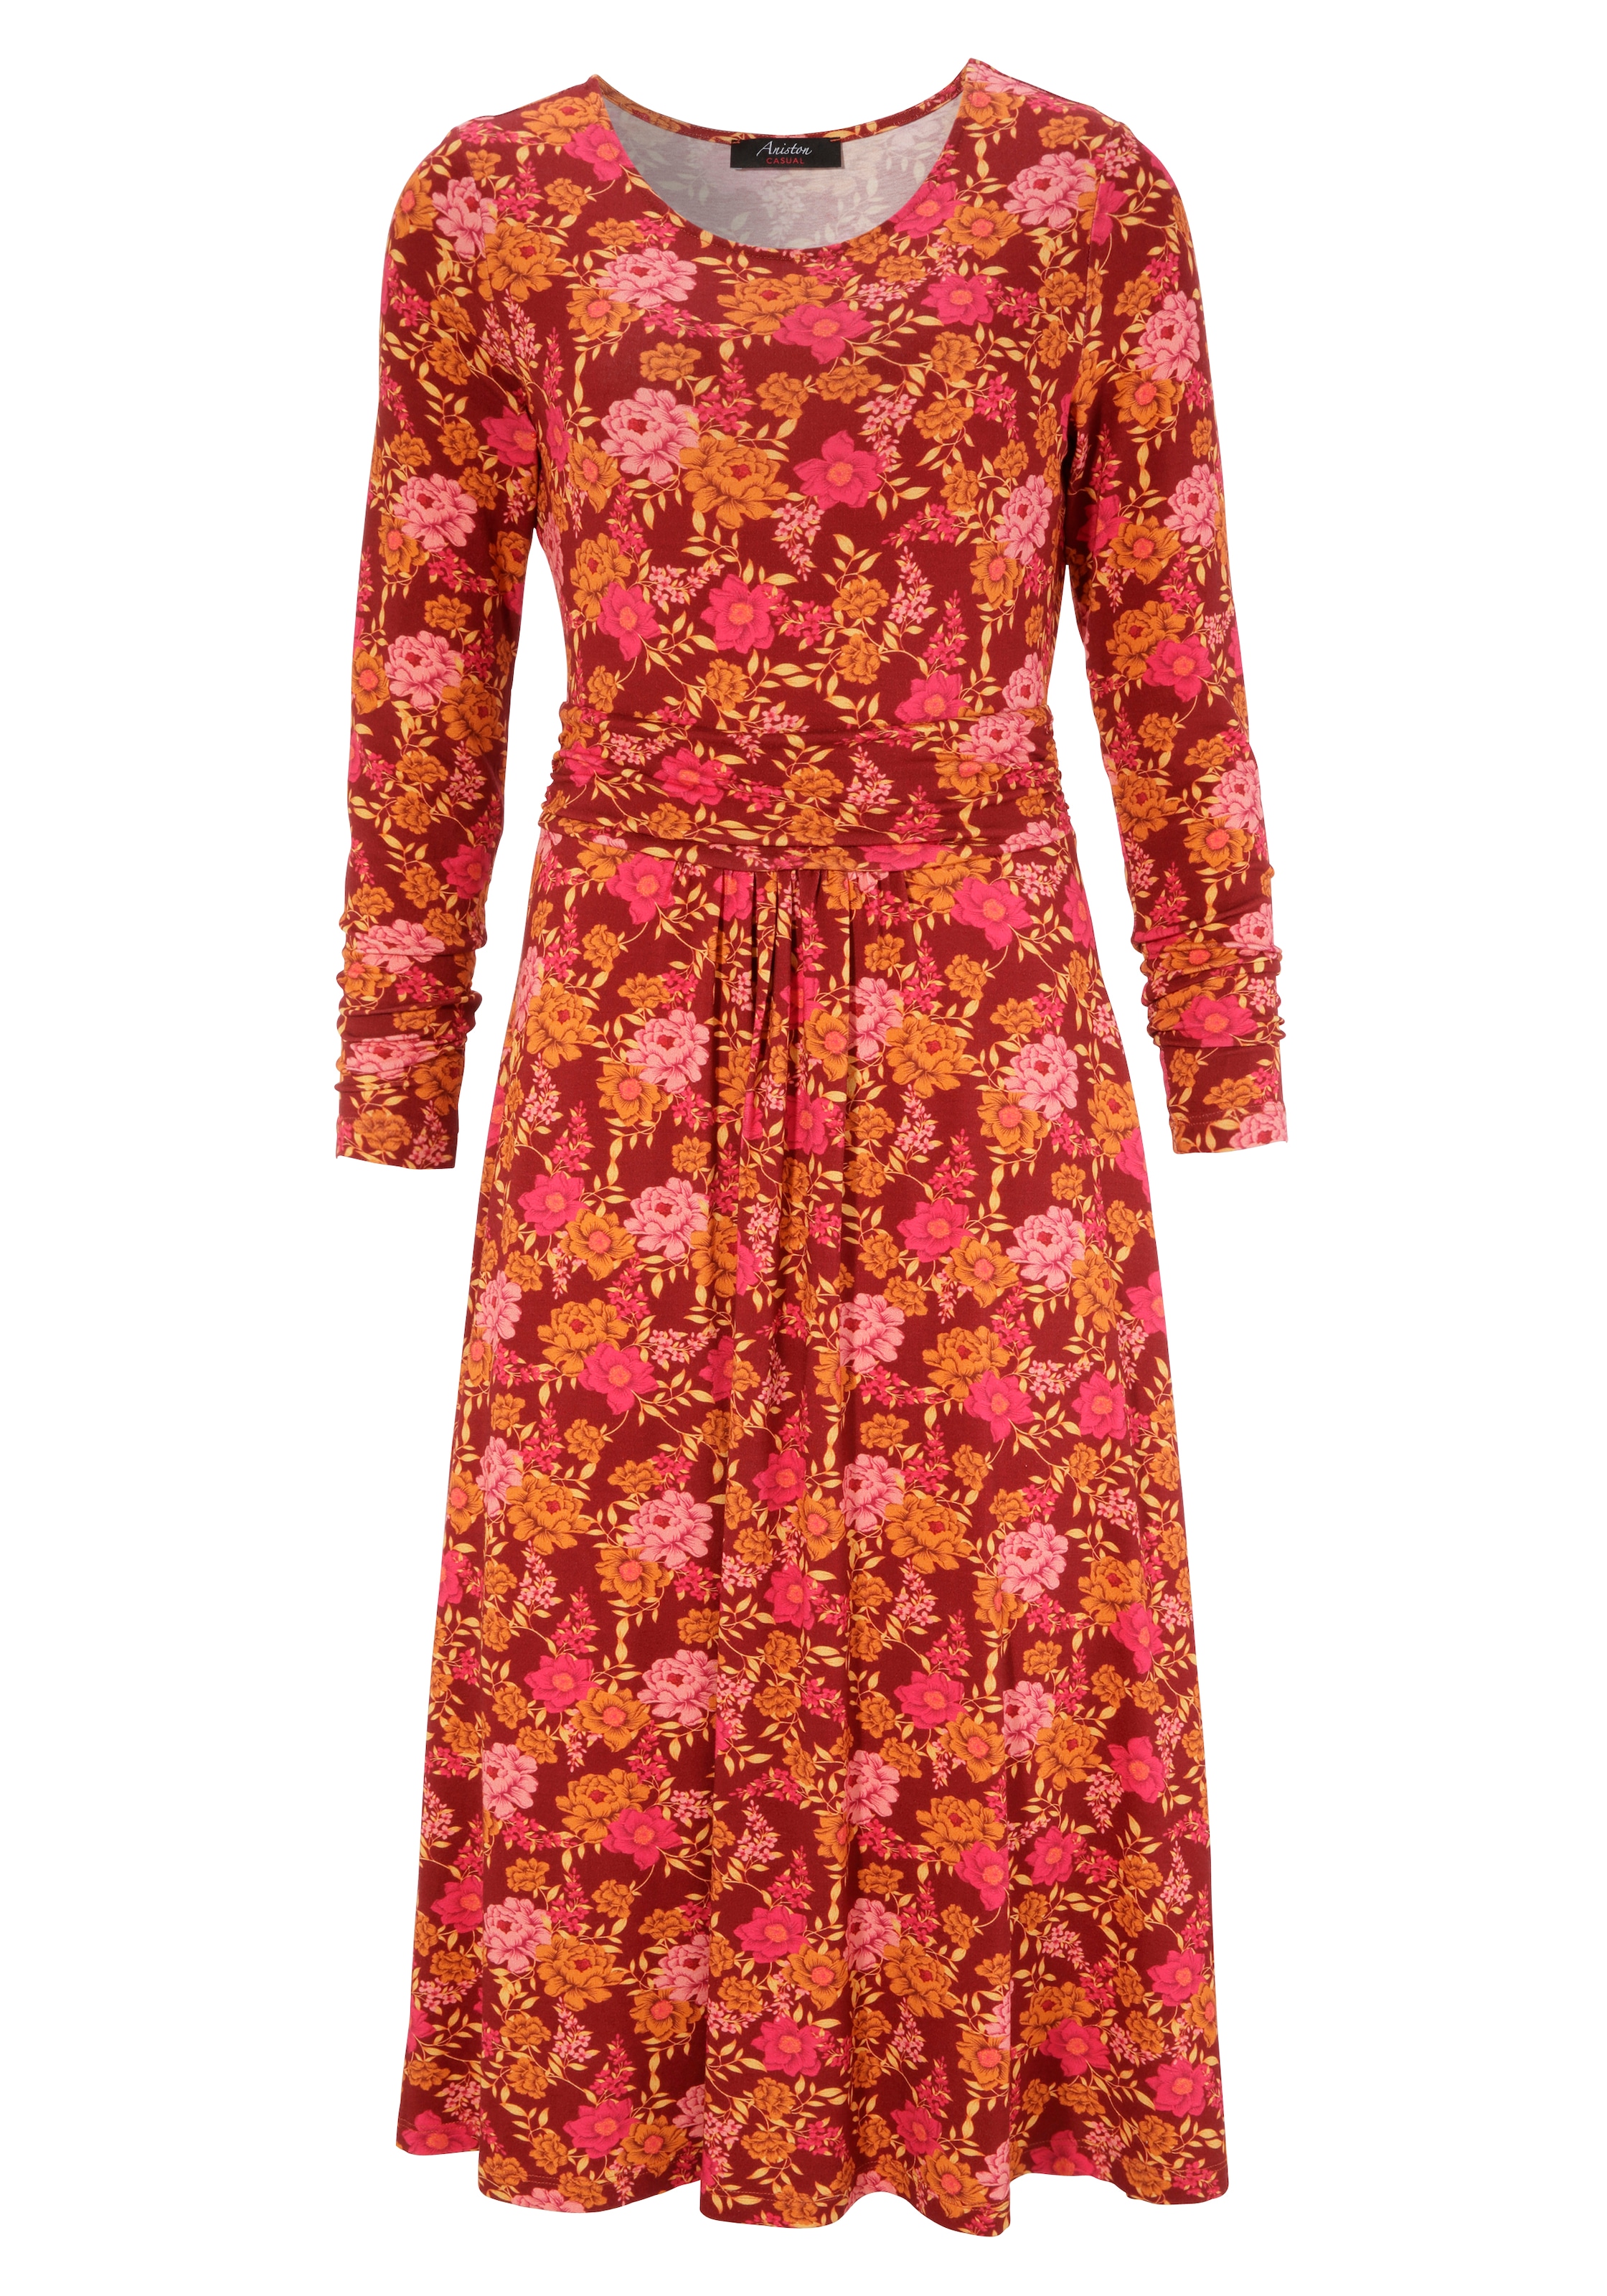 CASUAL romantischem Aniston Blumendruck Jerseykleid, shoppen mit